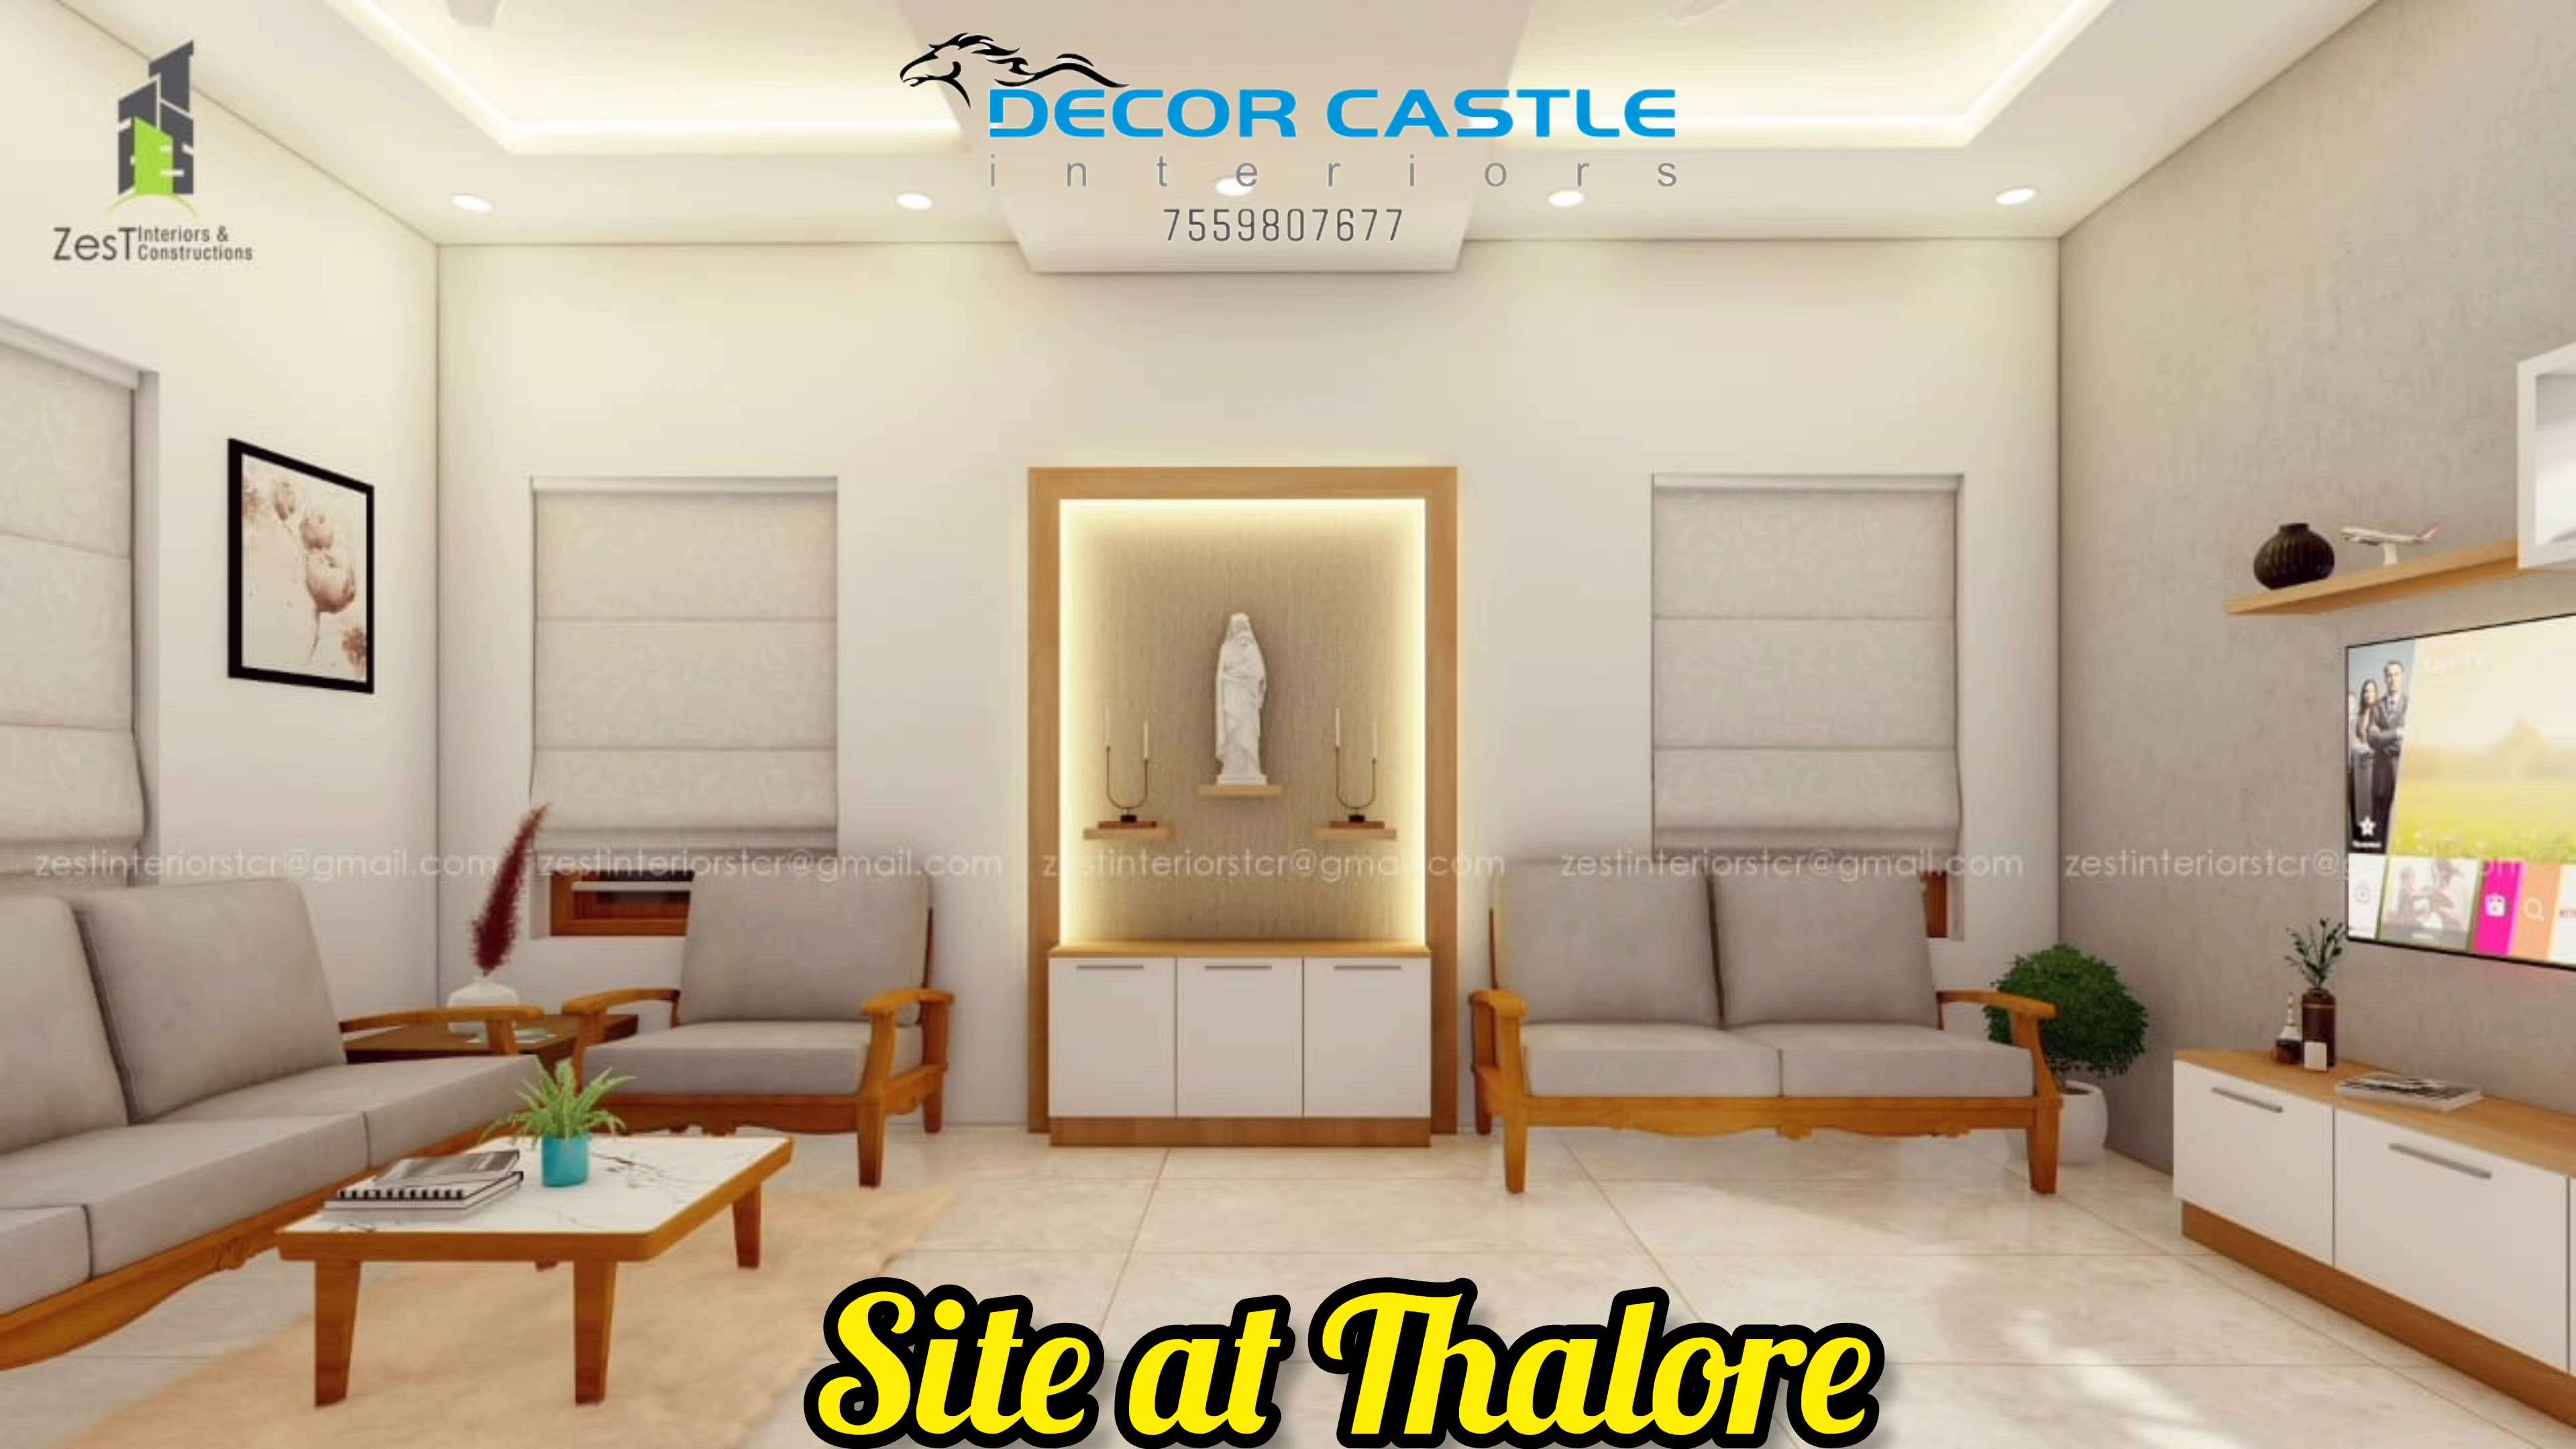 site at Thalore, THRISSUR district. complete interior and m9dular kitchen  #ModularKitchen #homeinterior